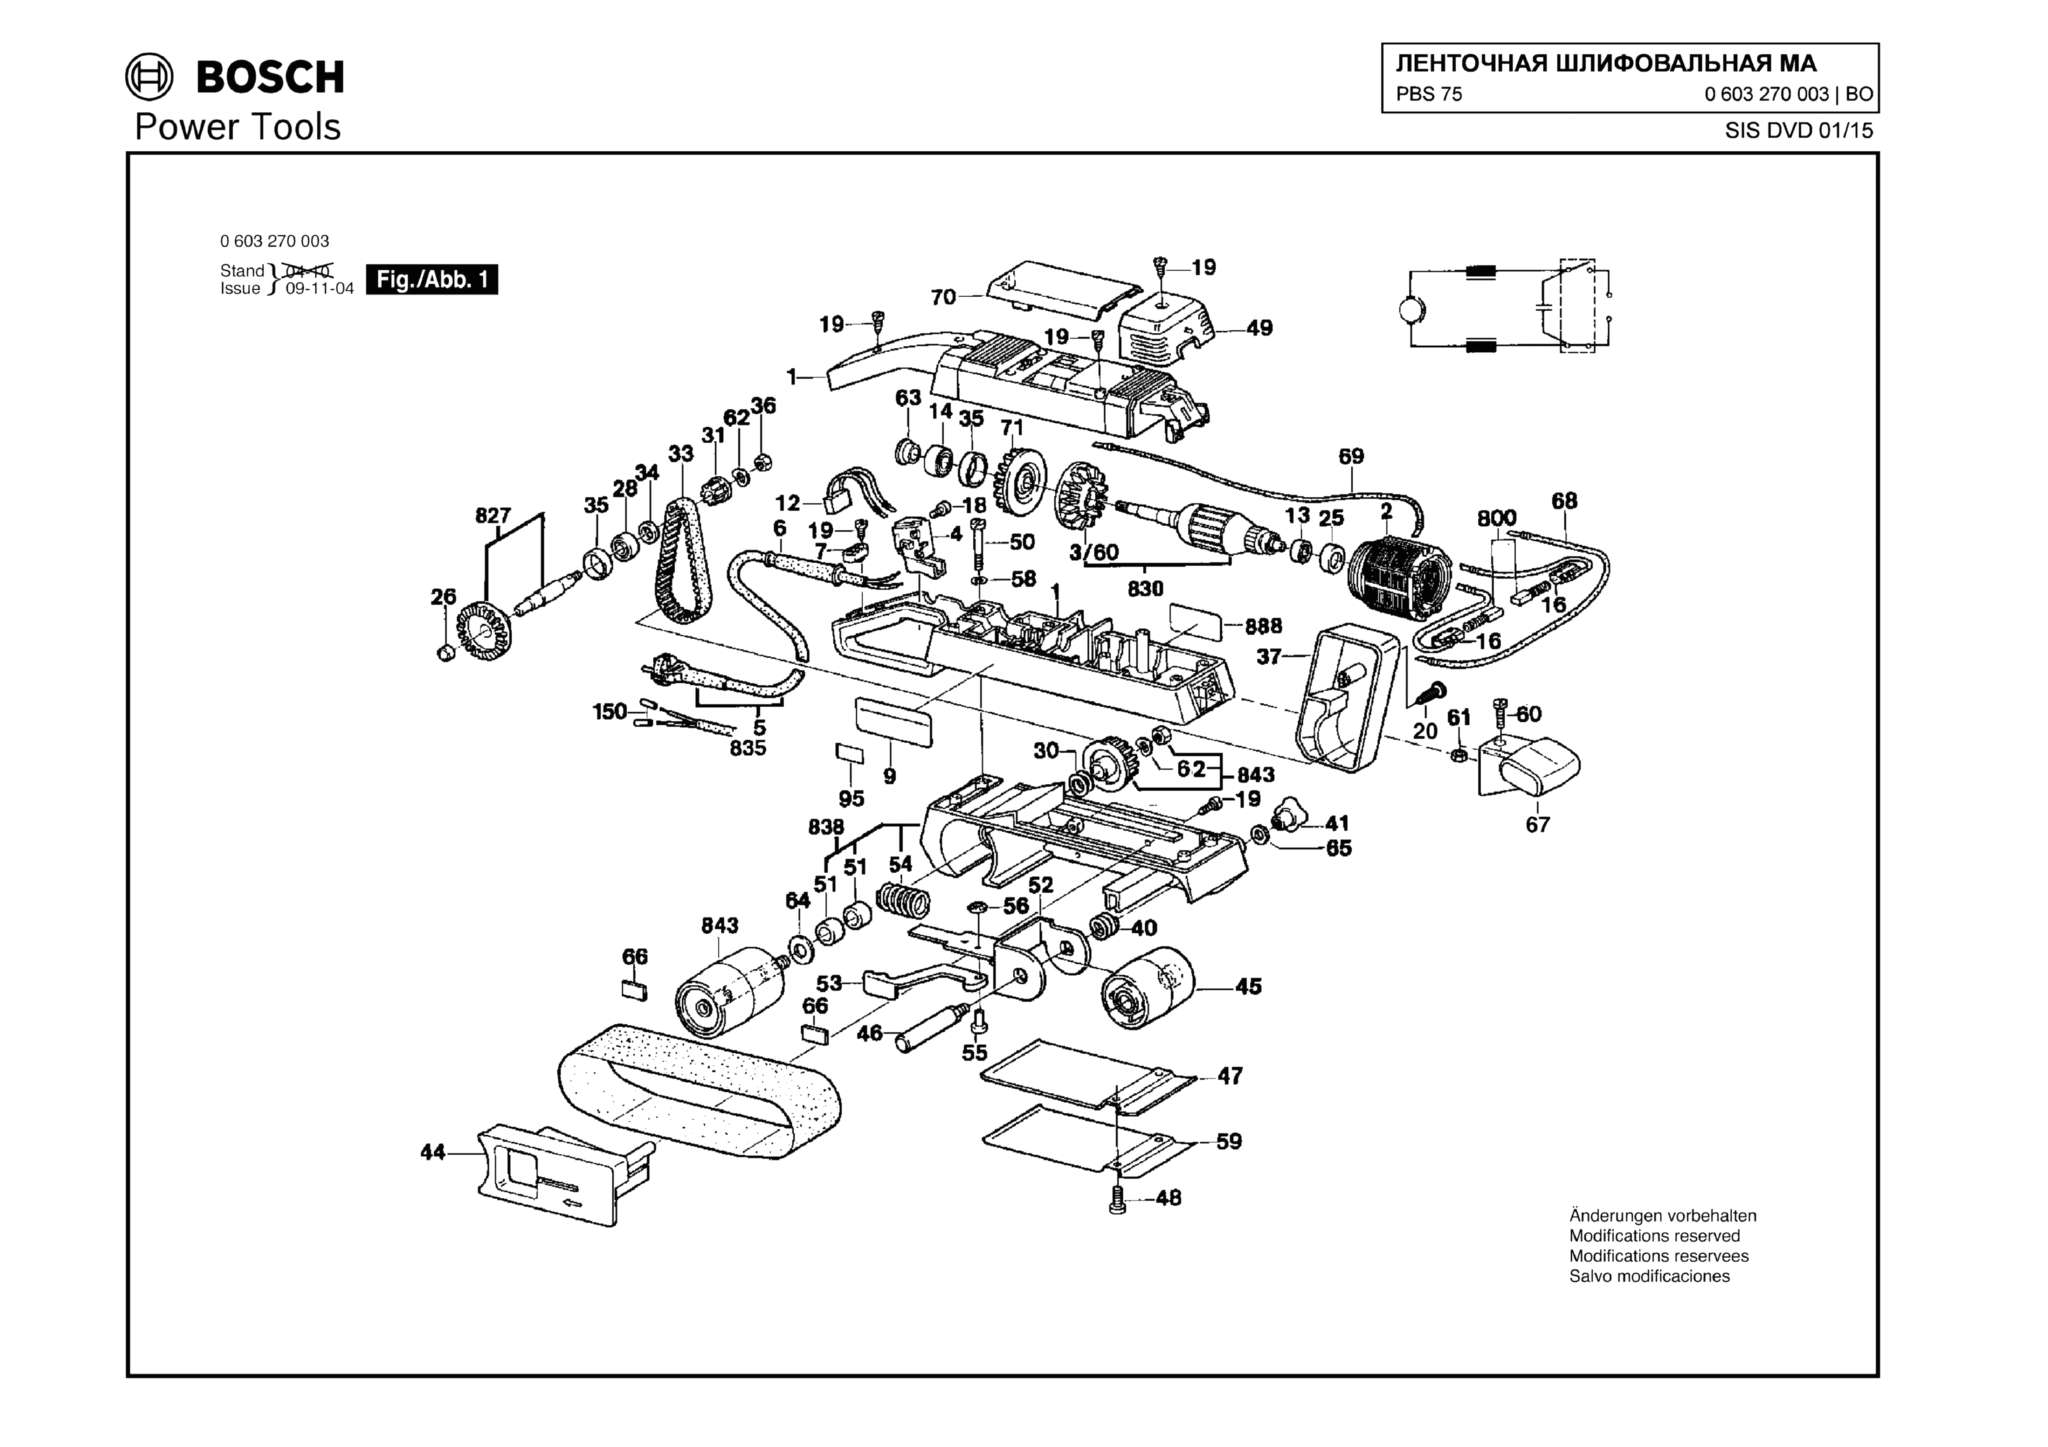 Запчасти, схема и деталировка Bosch PBS 75 (ТИП 0603270003)